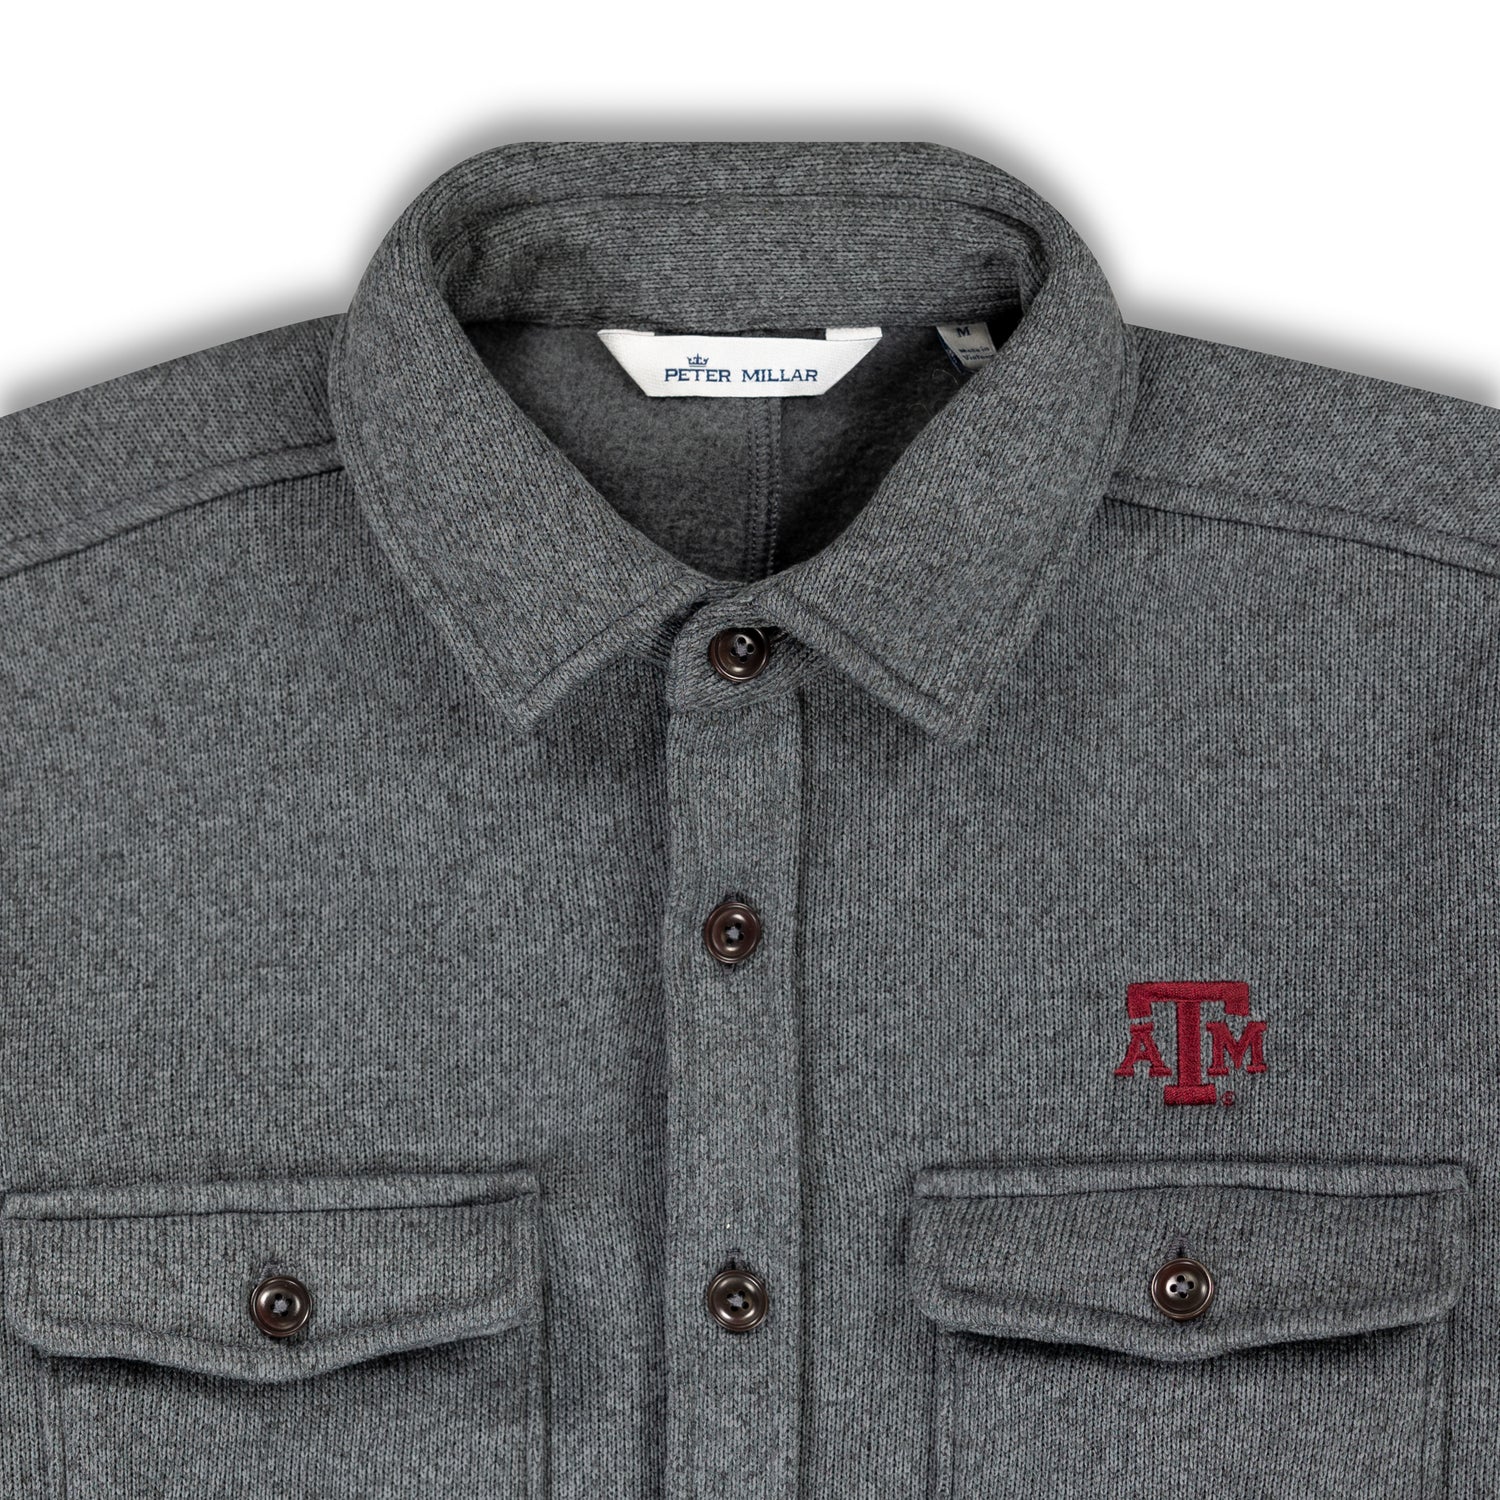 Texas A&M Peter Millar Crown Sweater Fleece Shirt Jacket